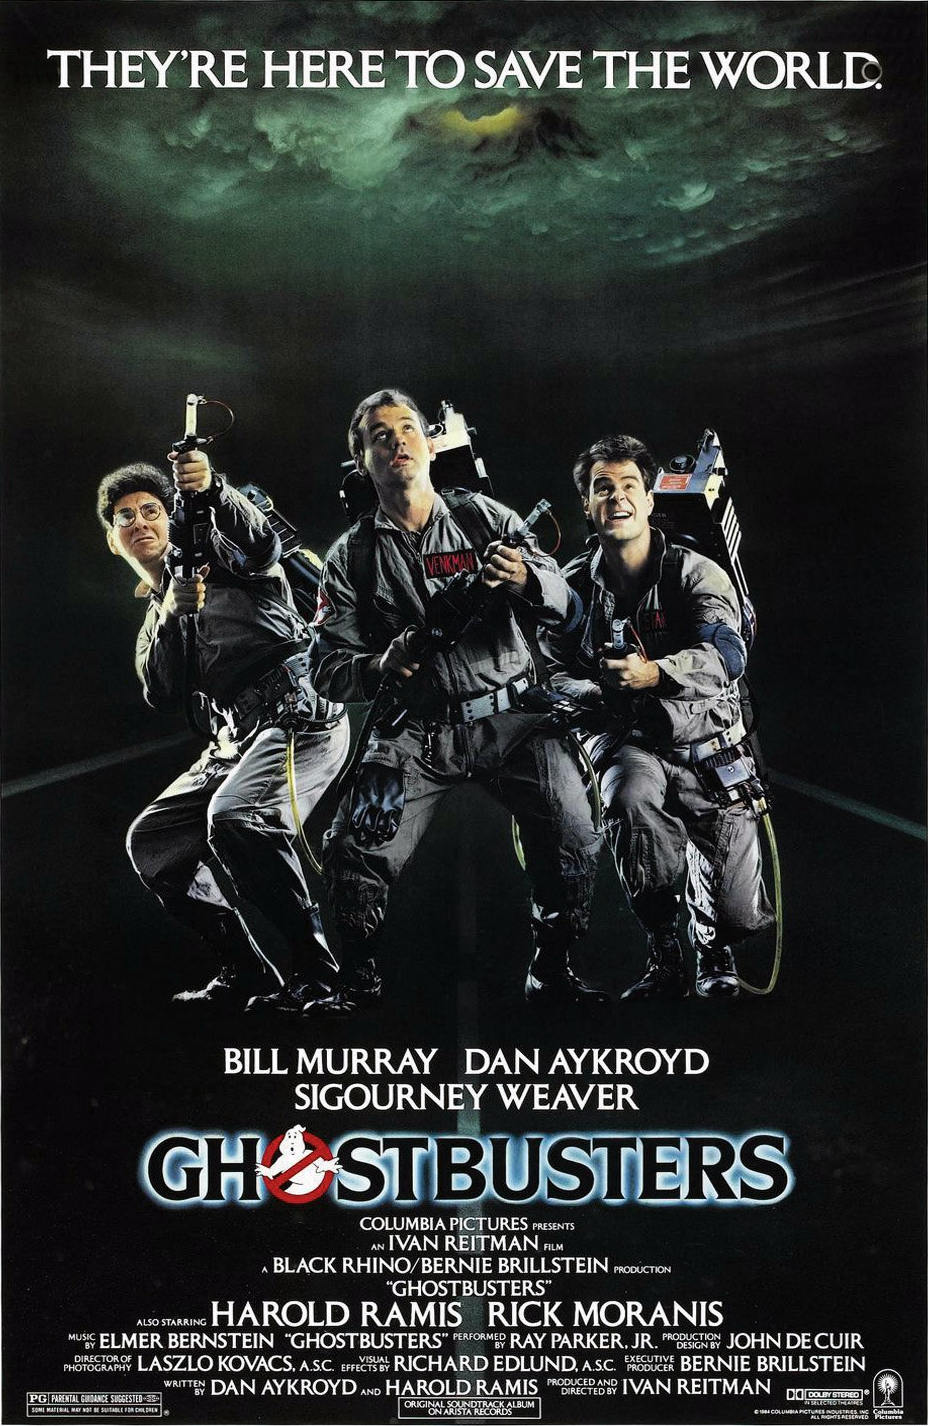 Ghostbusters (1984) movei poster featuring Bill Murray, Dan Aykroyd, and Harold Ramis